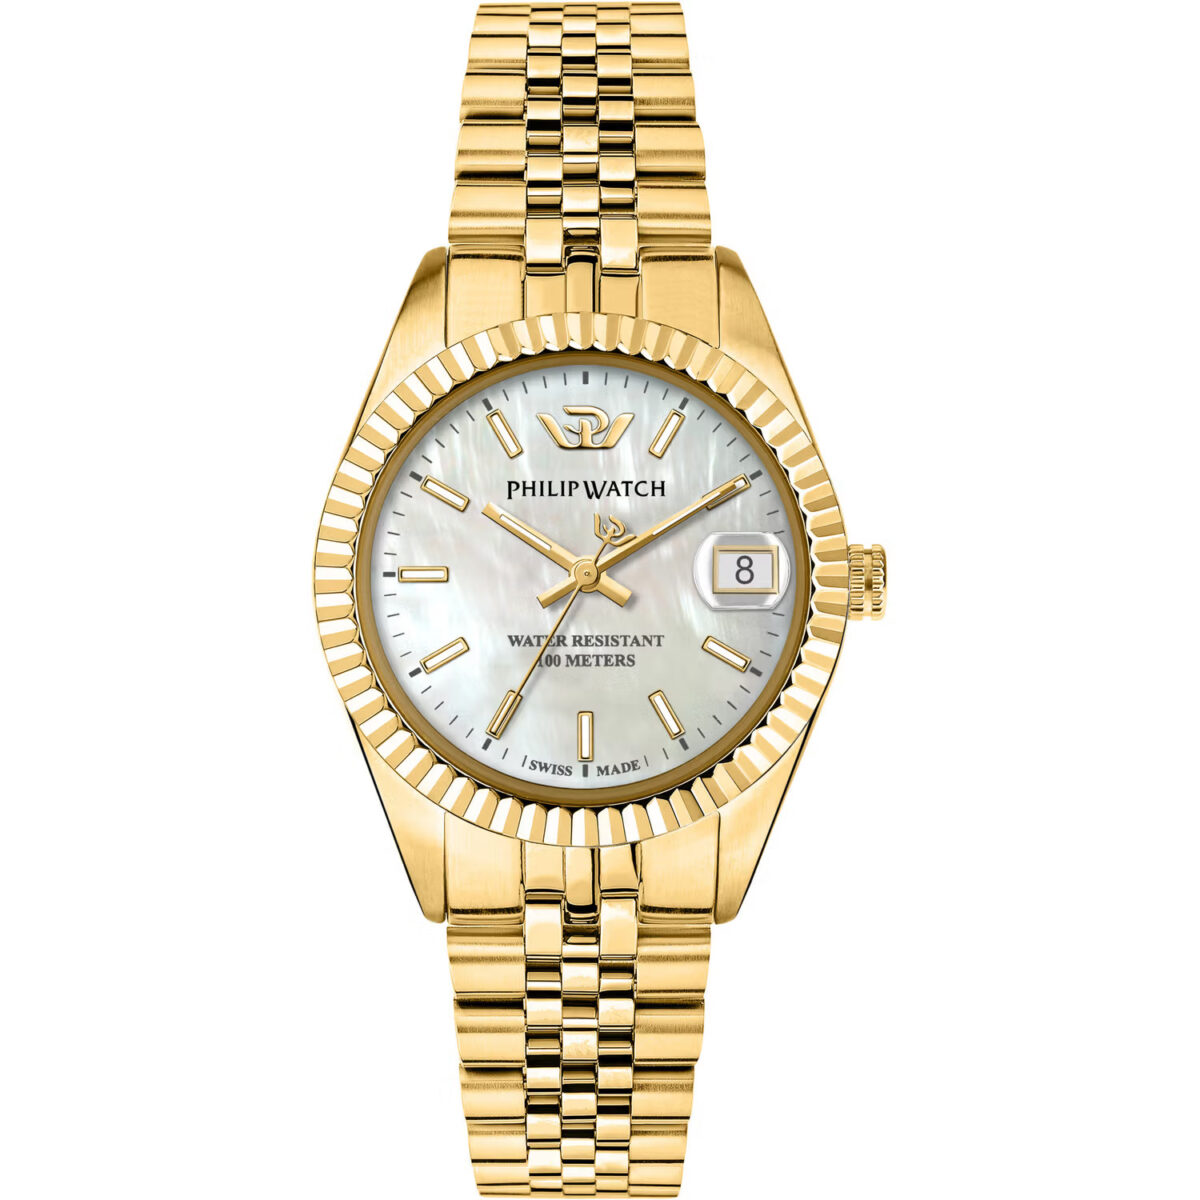 Orologio donna dorato philip watch con quadrante madreperla R8253597610